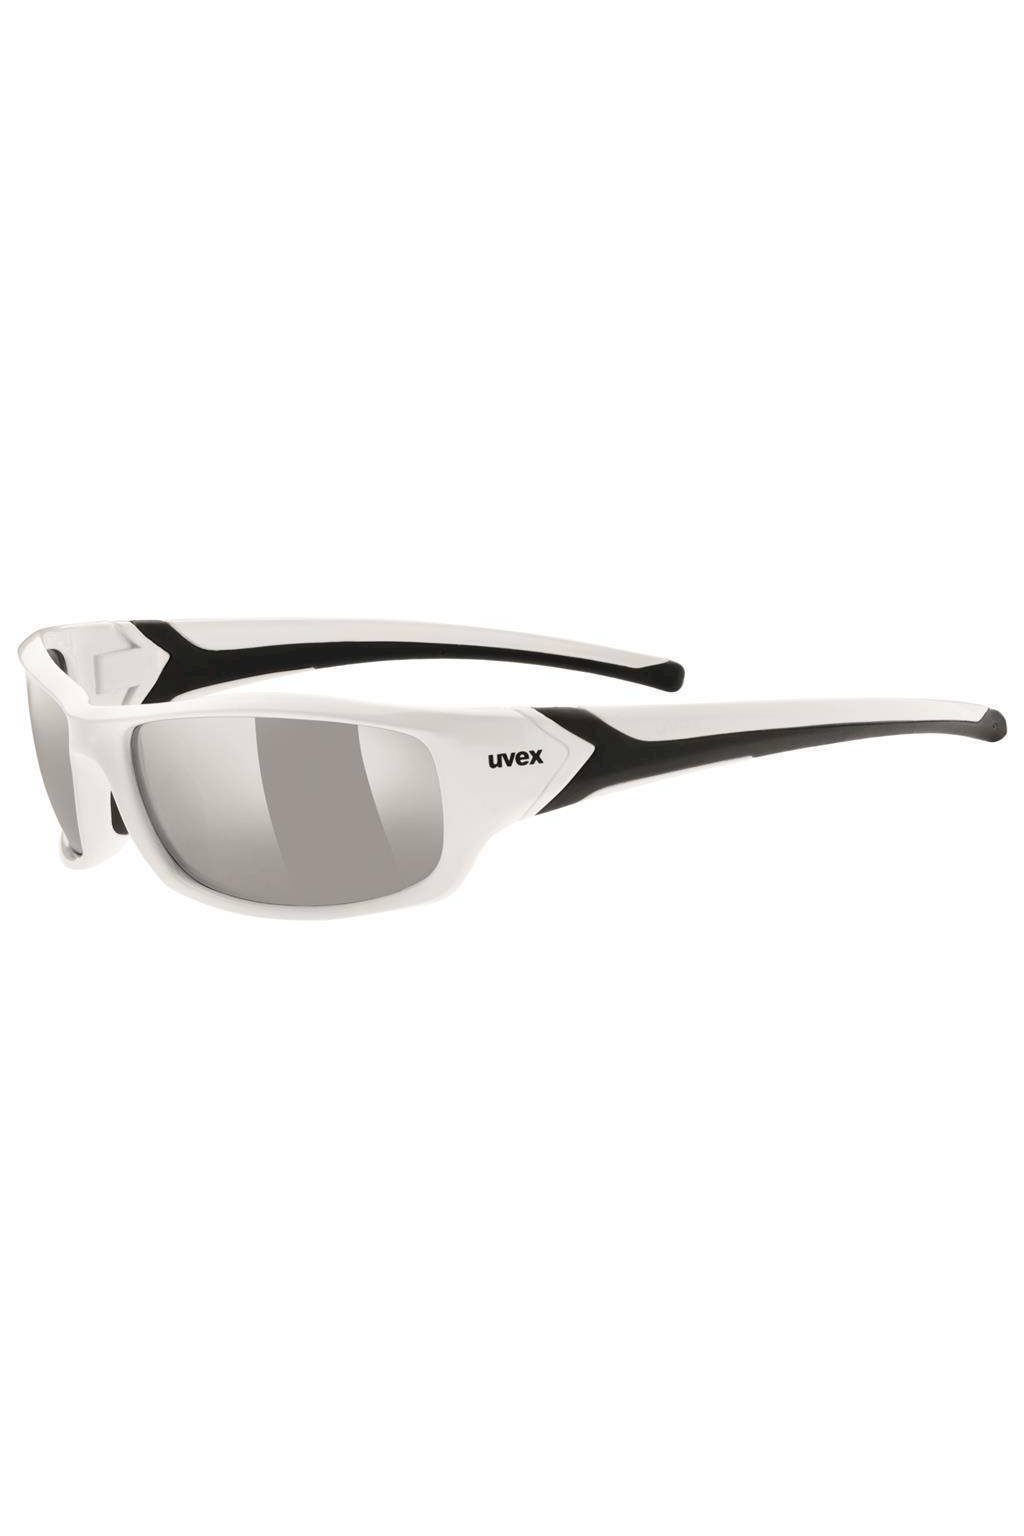 Cyklistické sluneční brýle UVEX SPORTSTYLE 211, WHITE BLACK